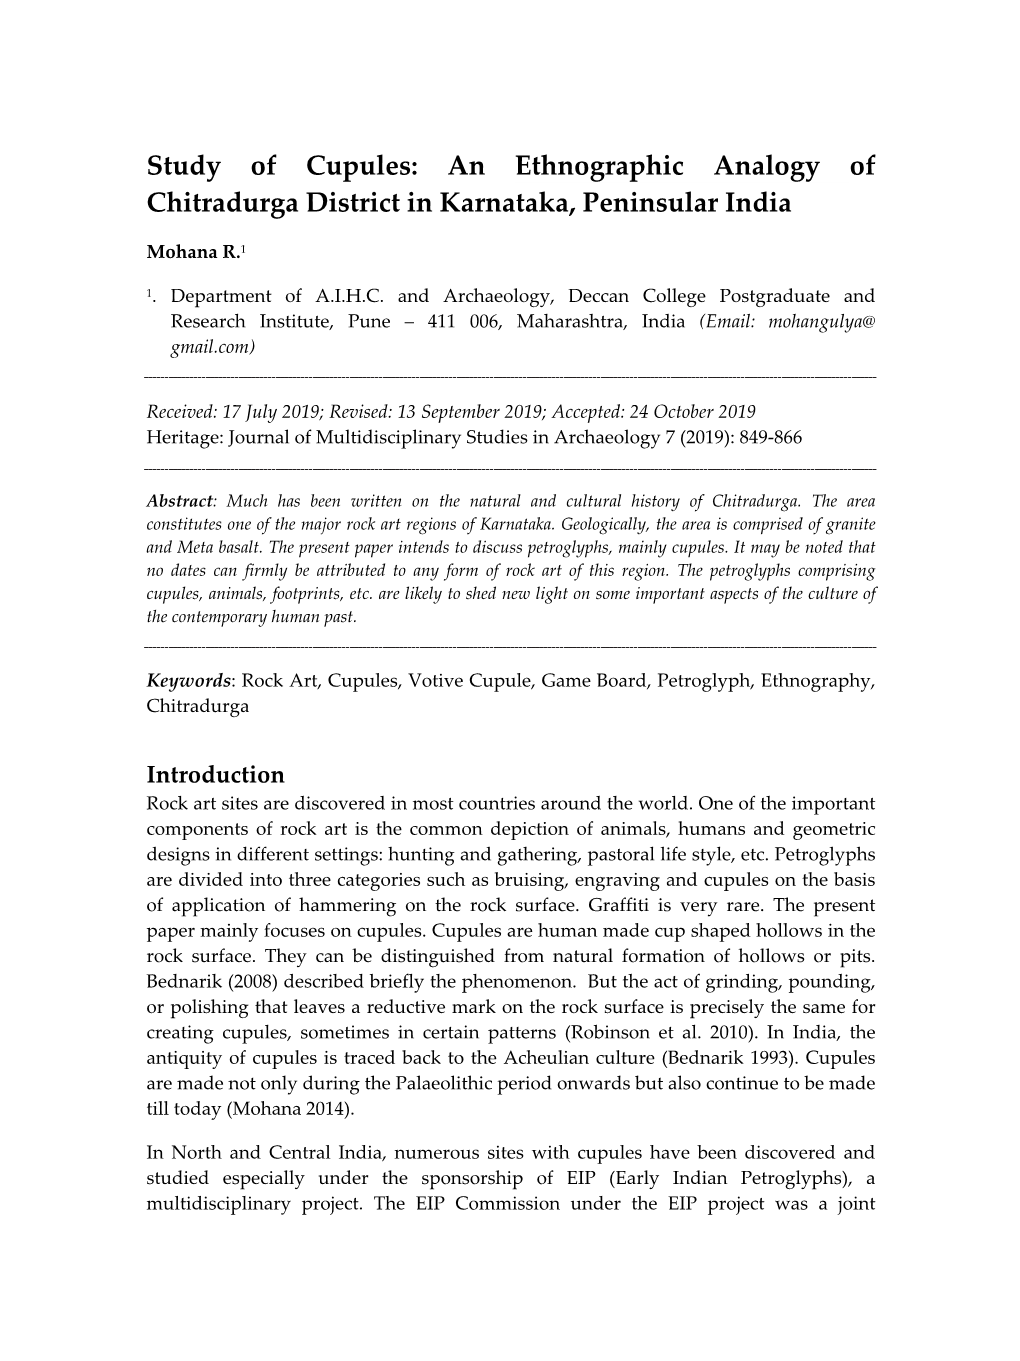 Study of Cupules: an Ethnographic Analogy of Chitradurga District in Karnataka, Peninsular India